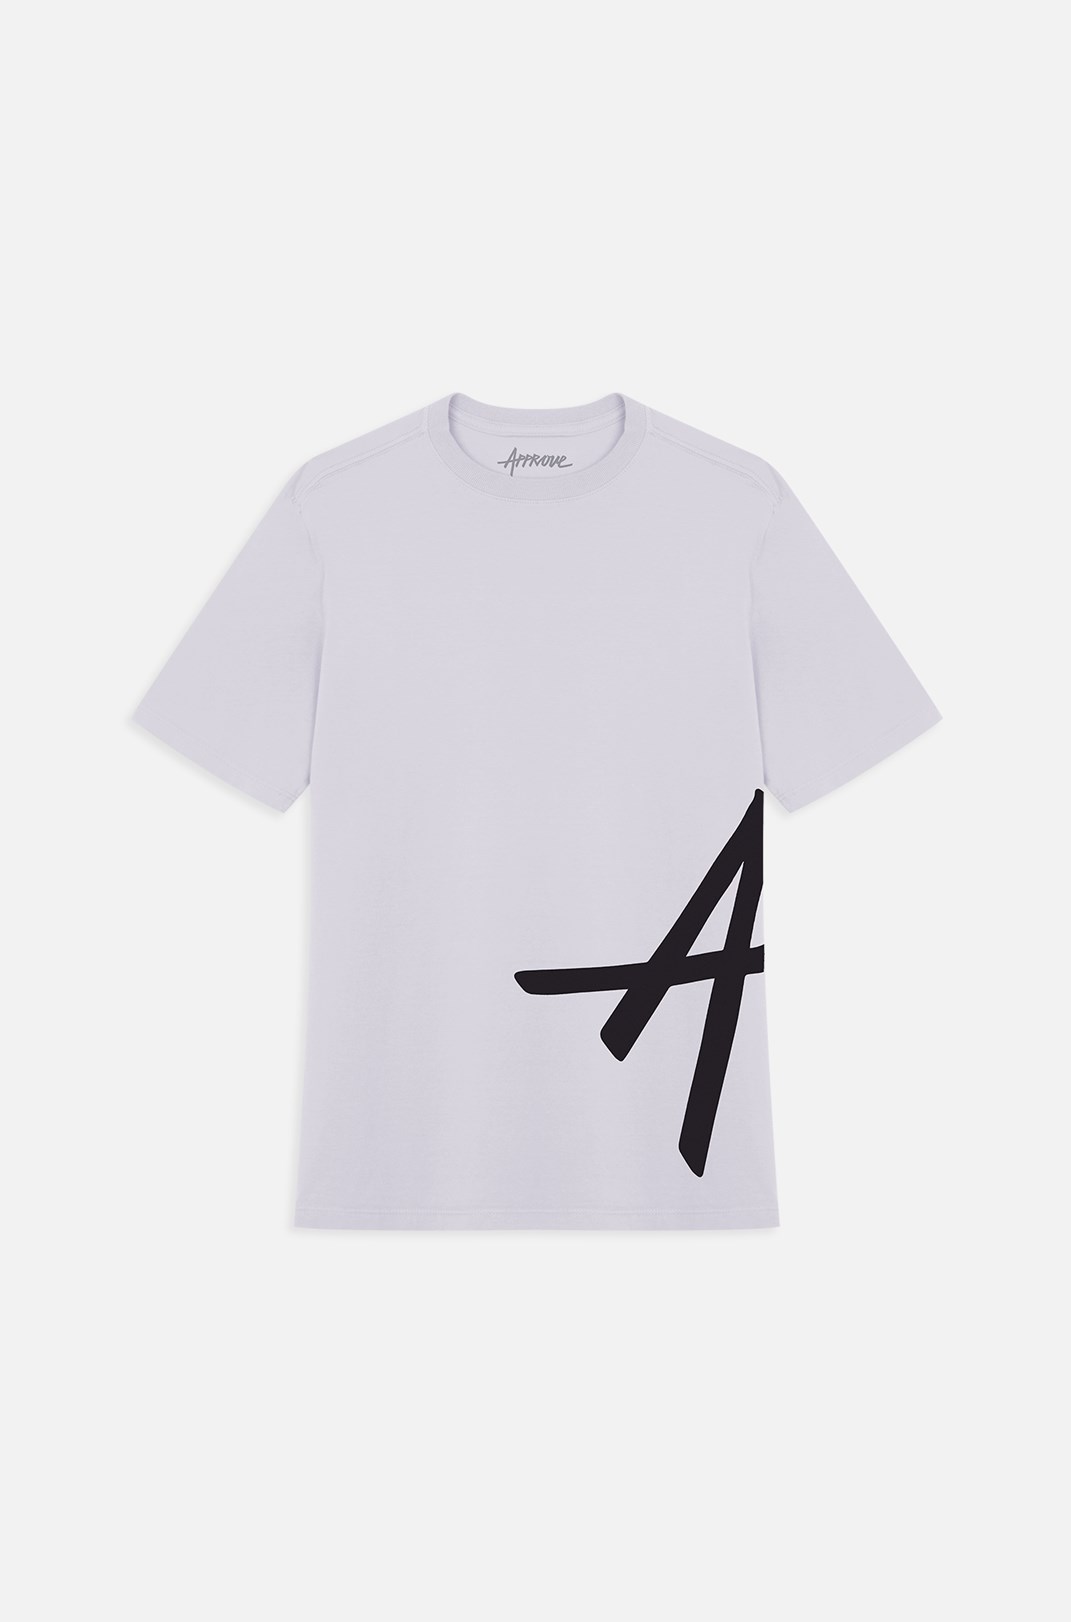 Camiseta Bold Approve Big Logo Branca e Preta